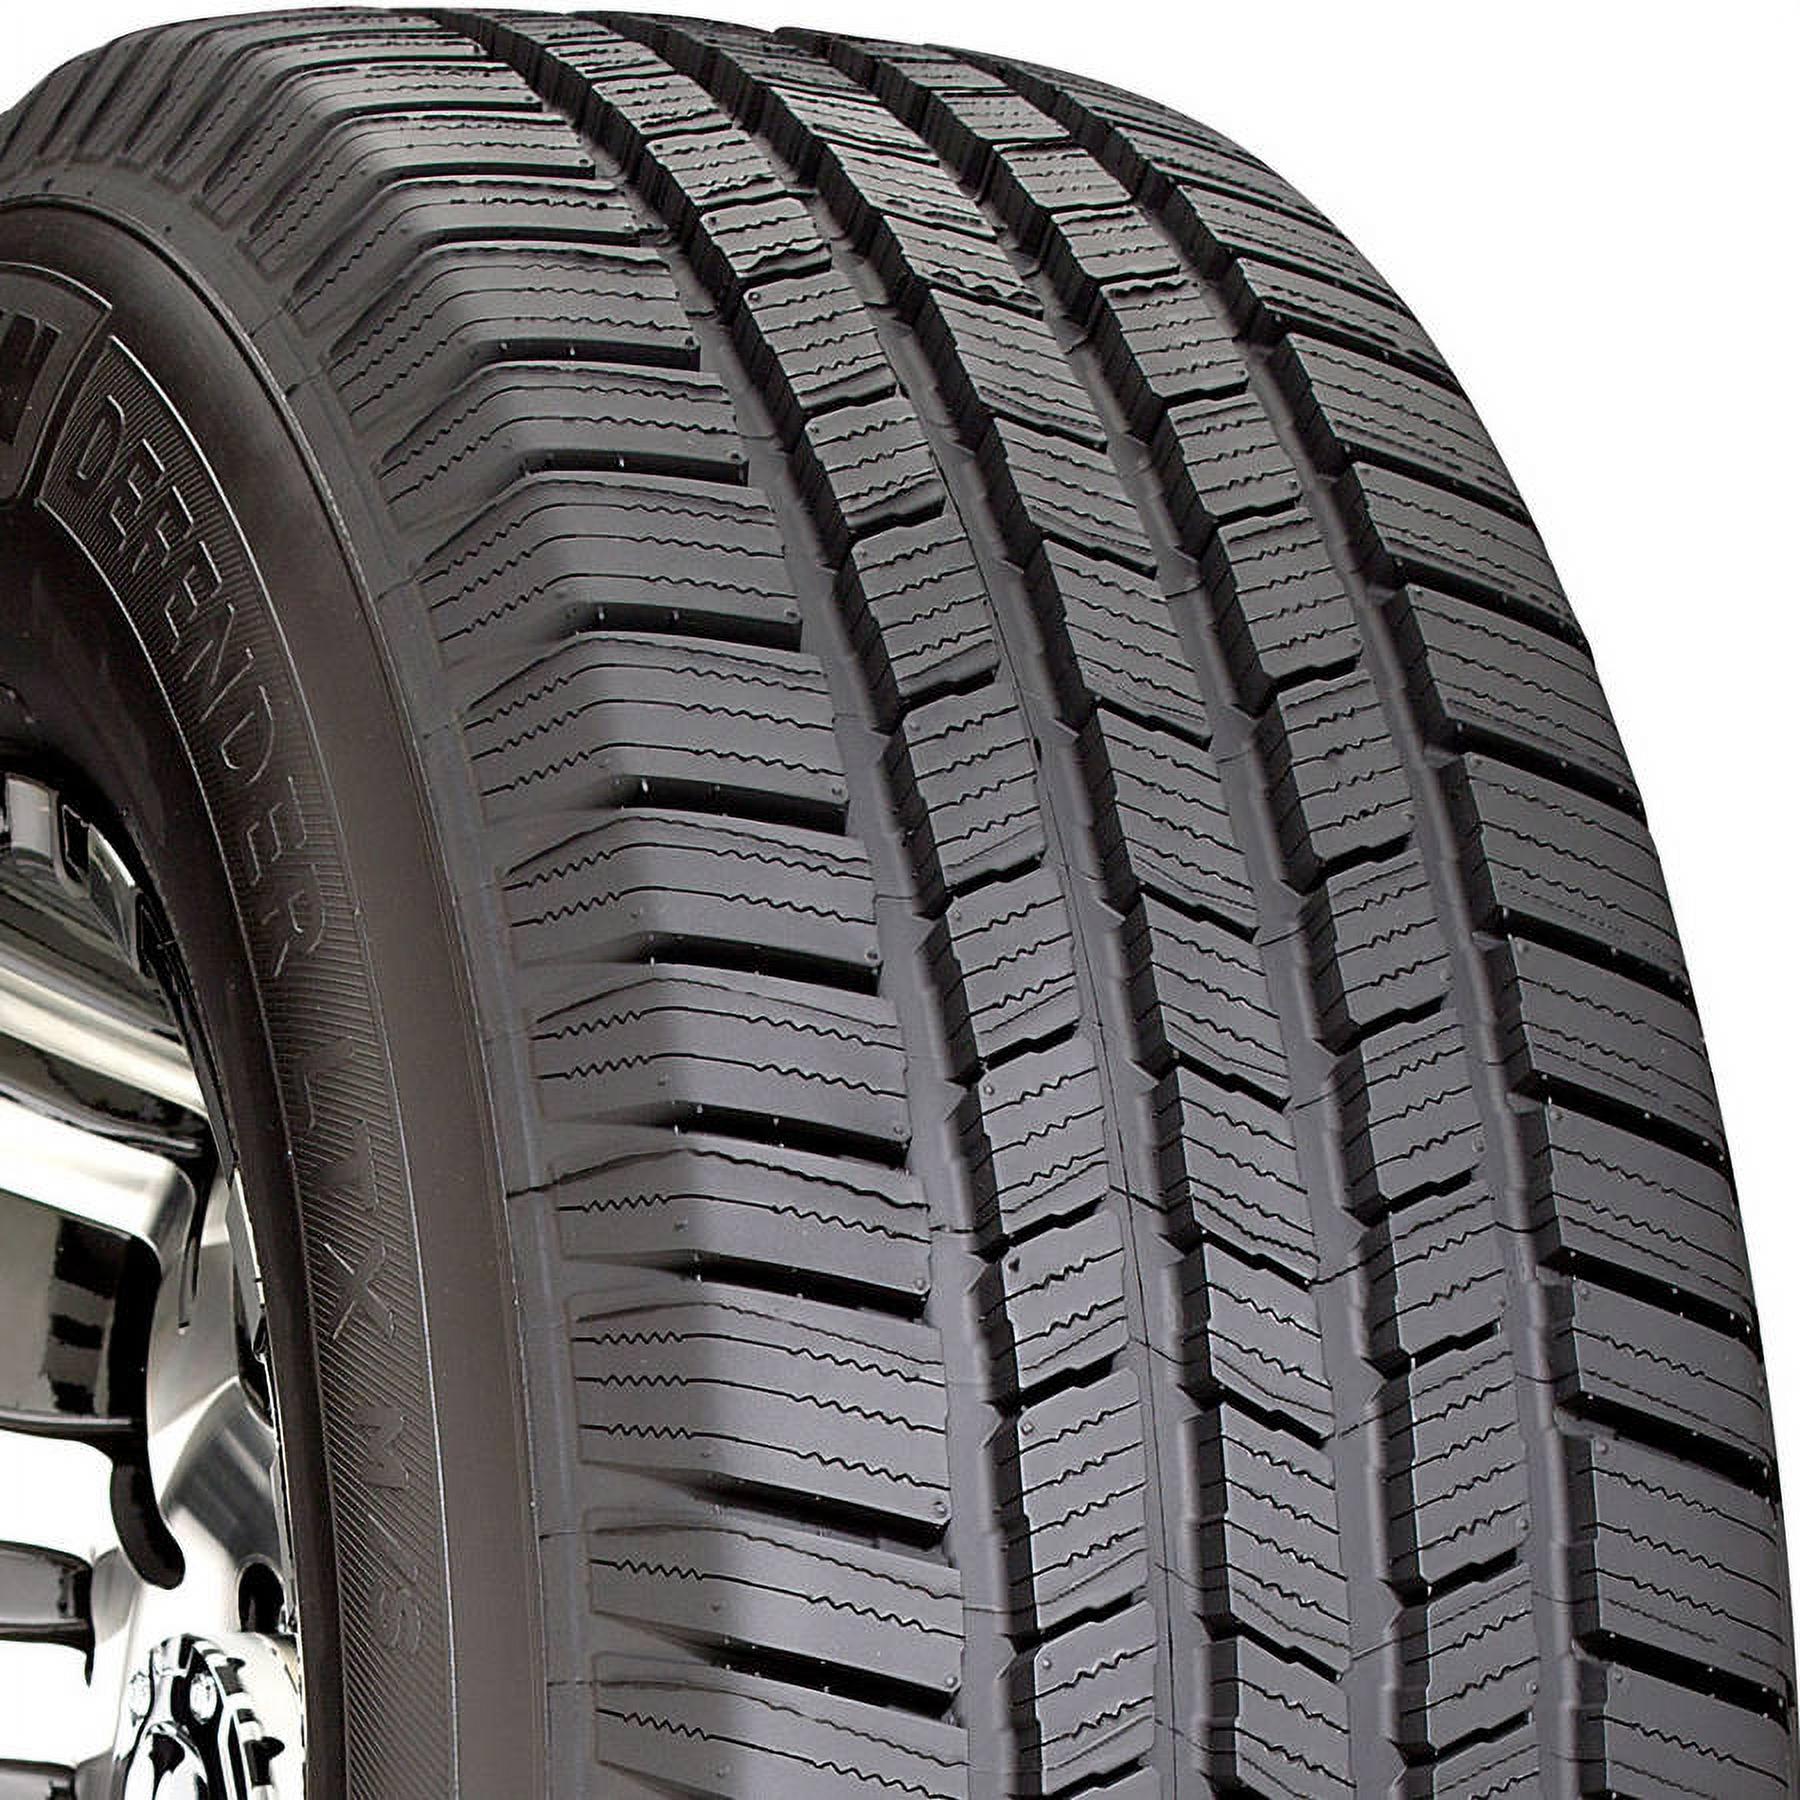 Michelin Defender LTX M/S 245/65R17 107 T Tire - image 1 of 23